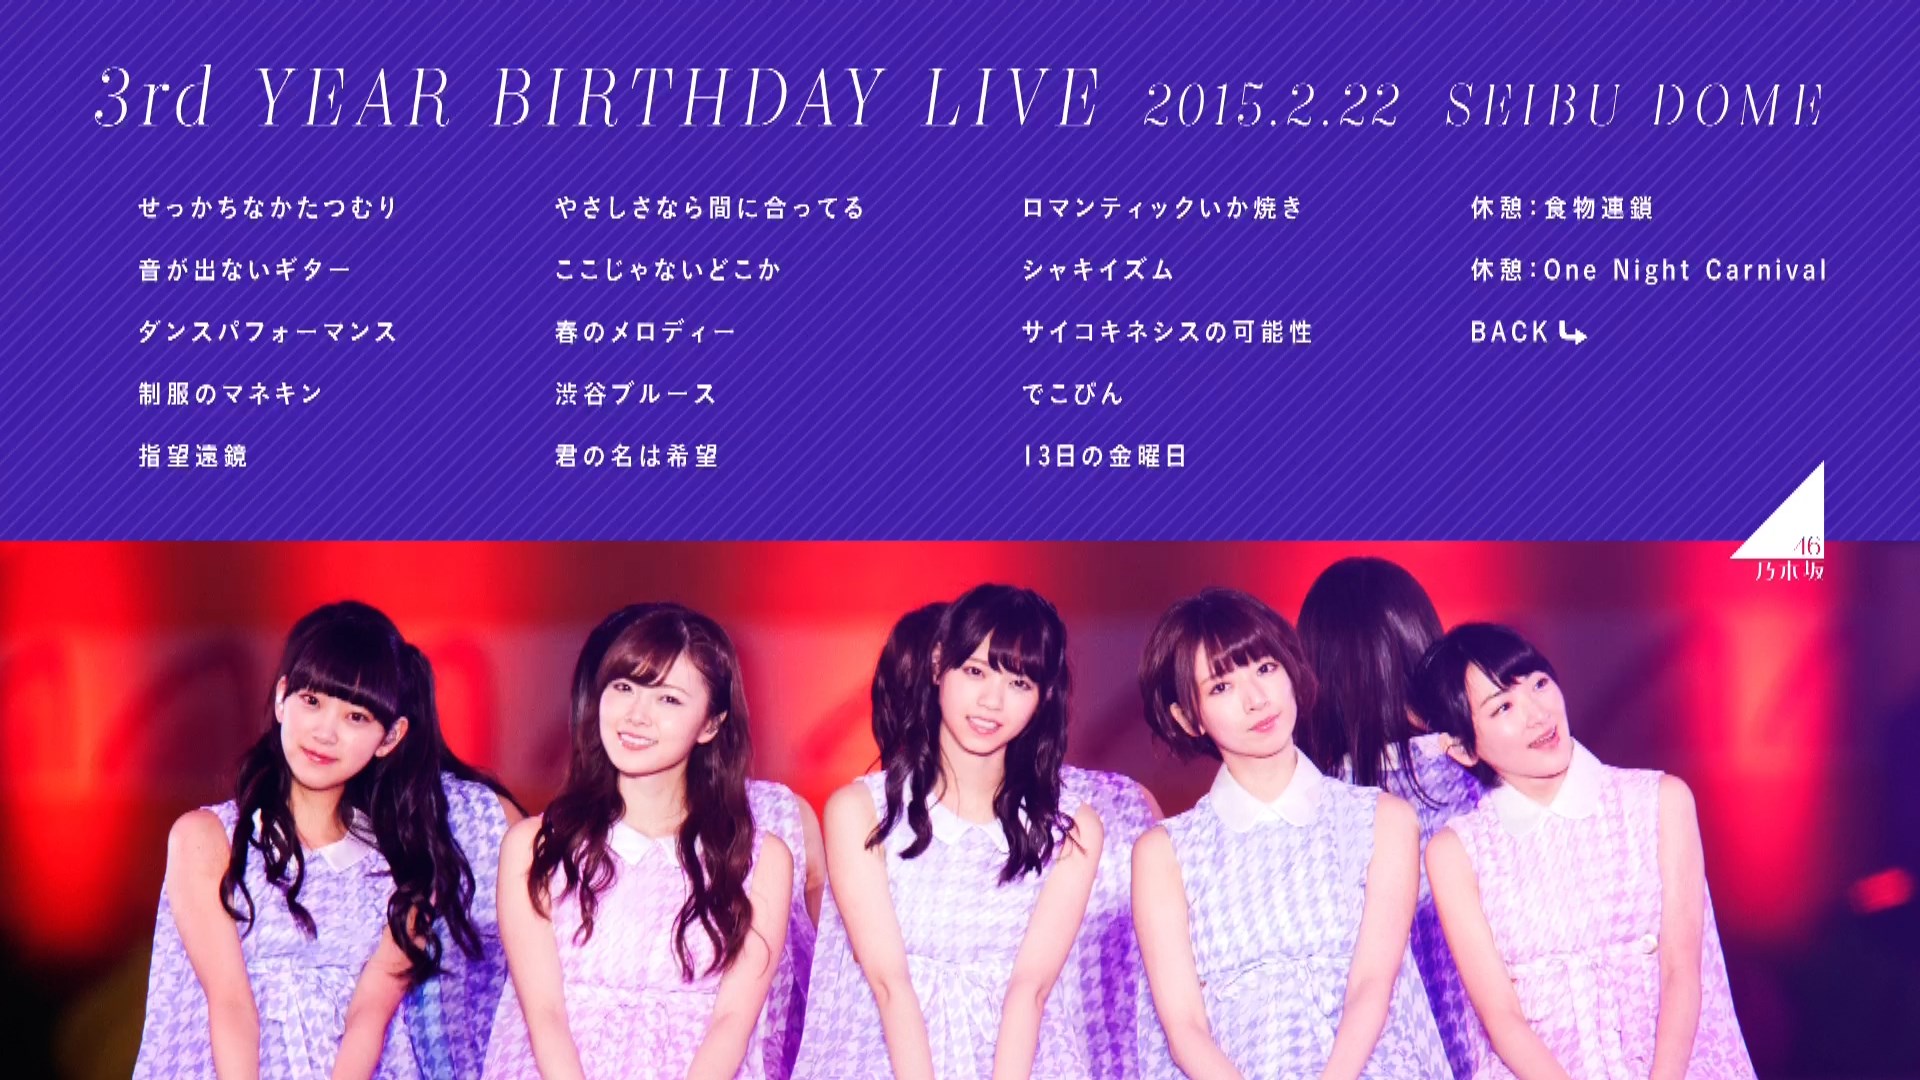 乃木坂46 3rd YEAR BIRTHDAY LIVE 2015.2.22 SEIBU DOME《ISO 105G 